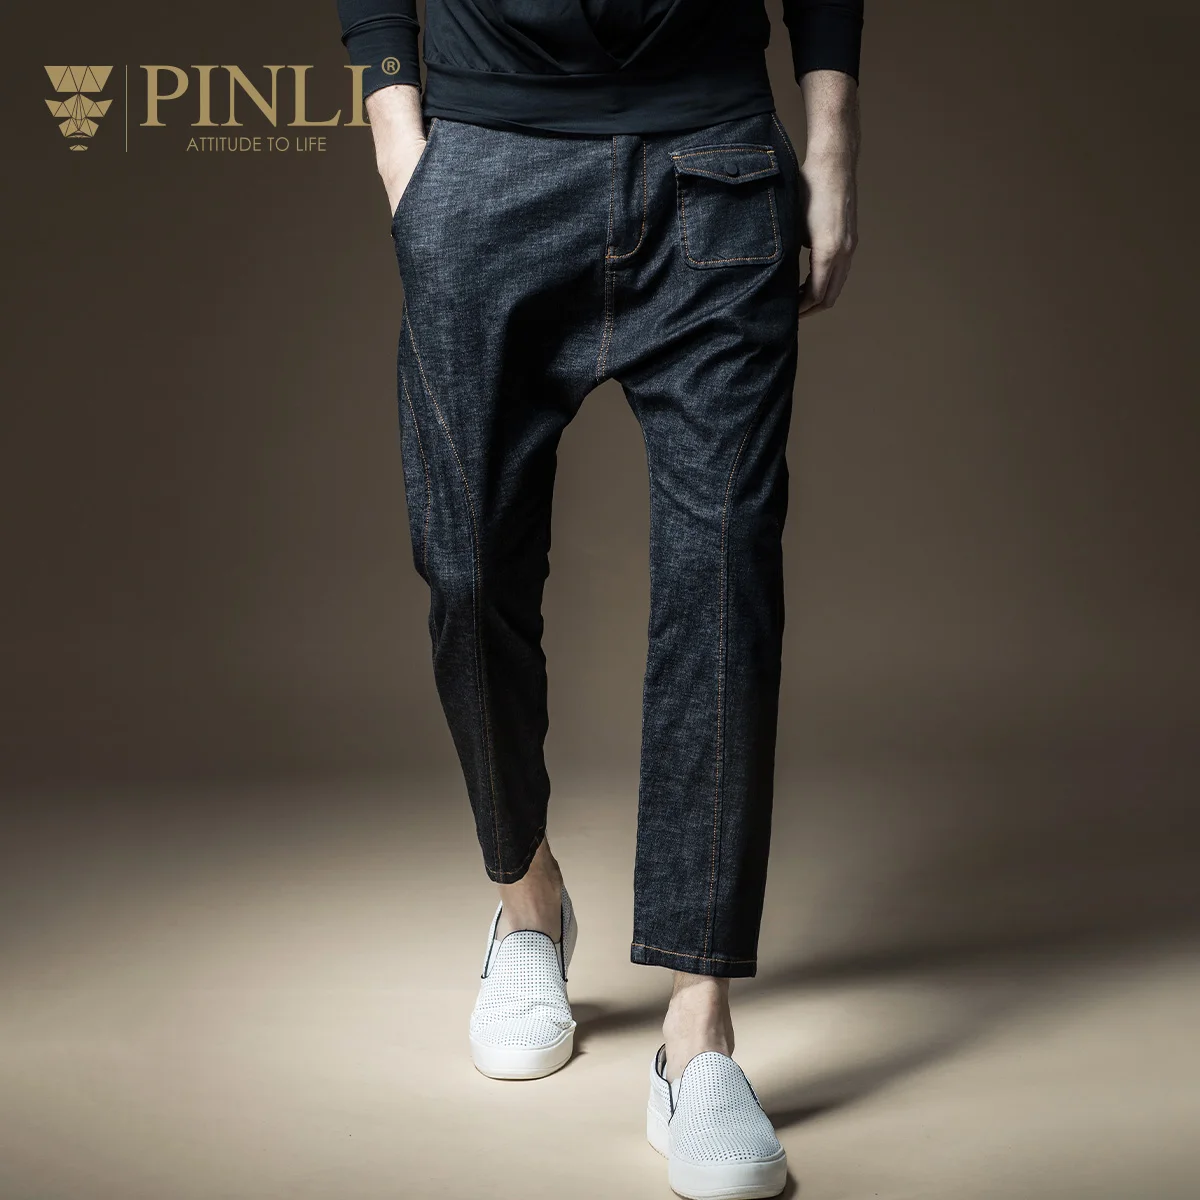 2019 джинсы Для мужчин Pinli Лидер продаж Молния Fly Поддельные новорожденных середине тонкий осень Новый стиль Для мужчин ноги, сумки